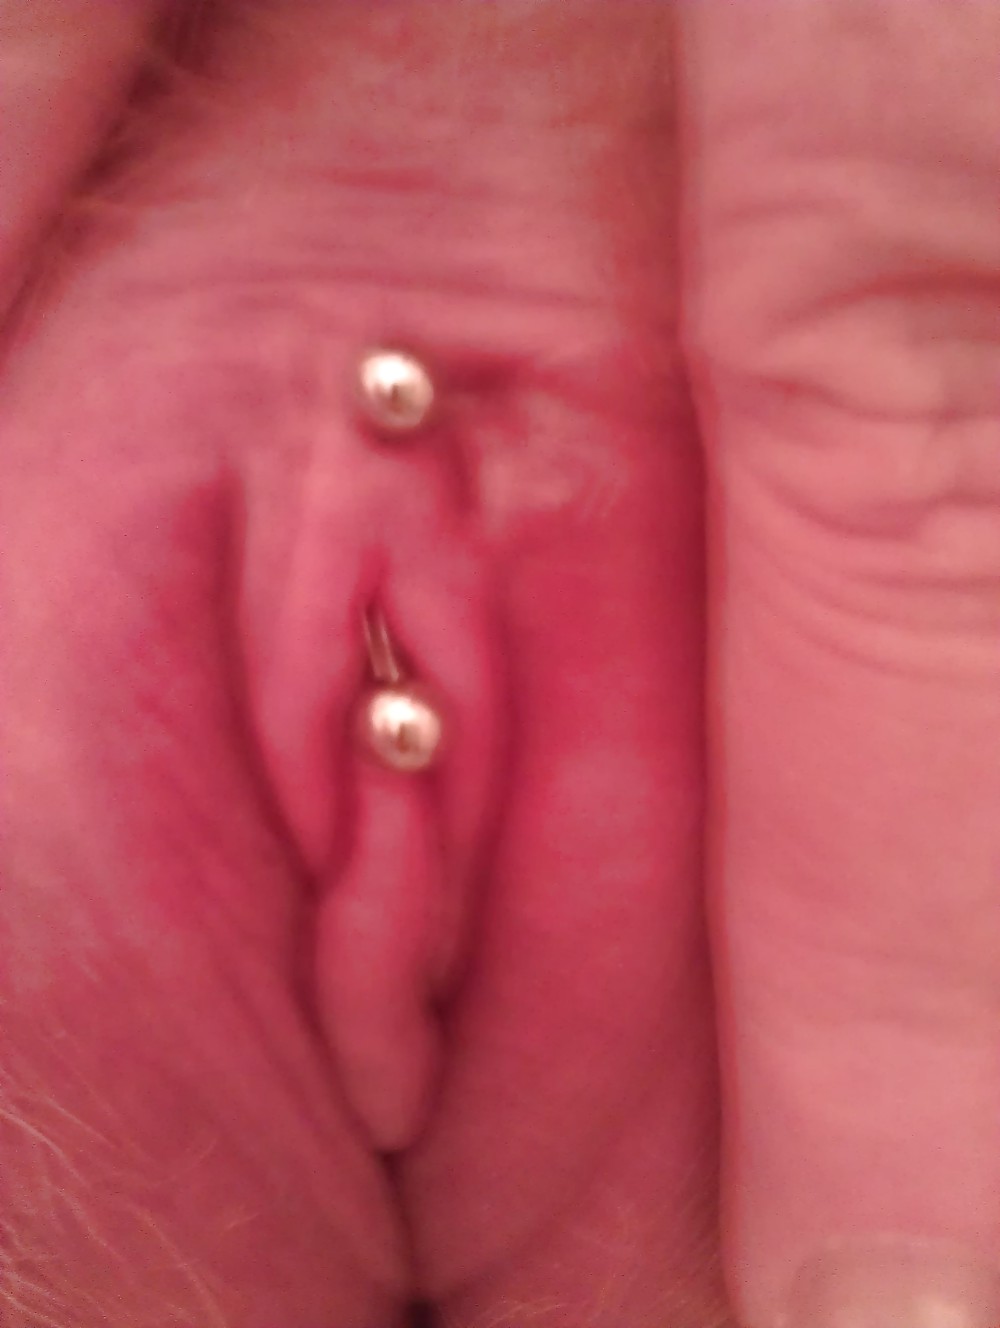 Meine Klitoris Ring #8062605